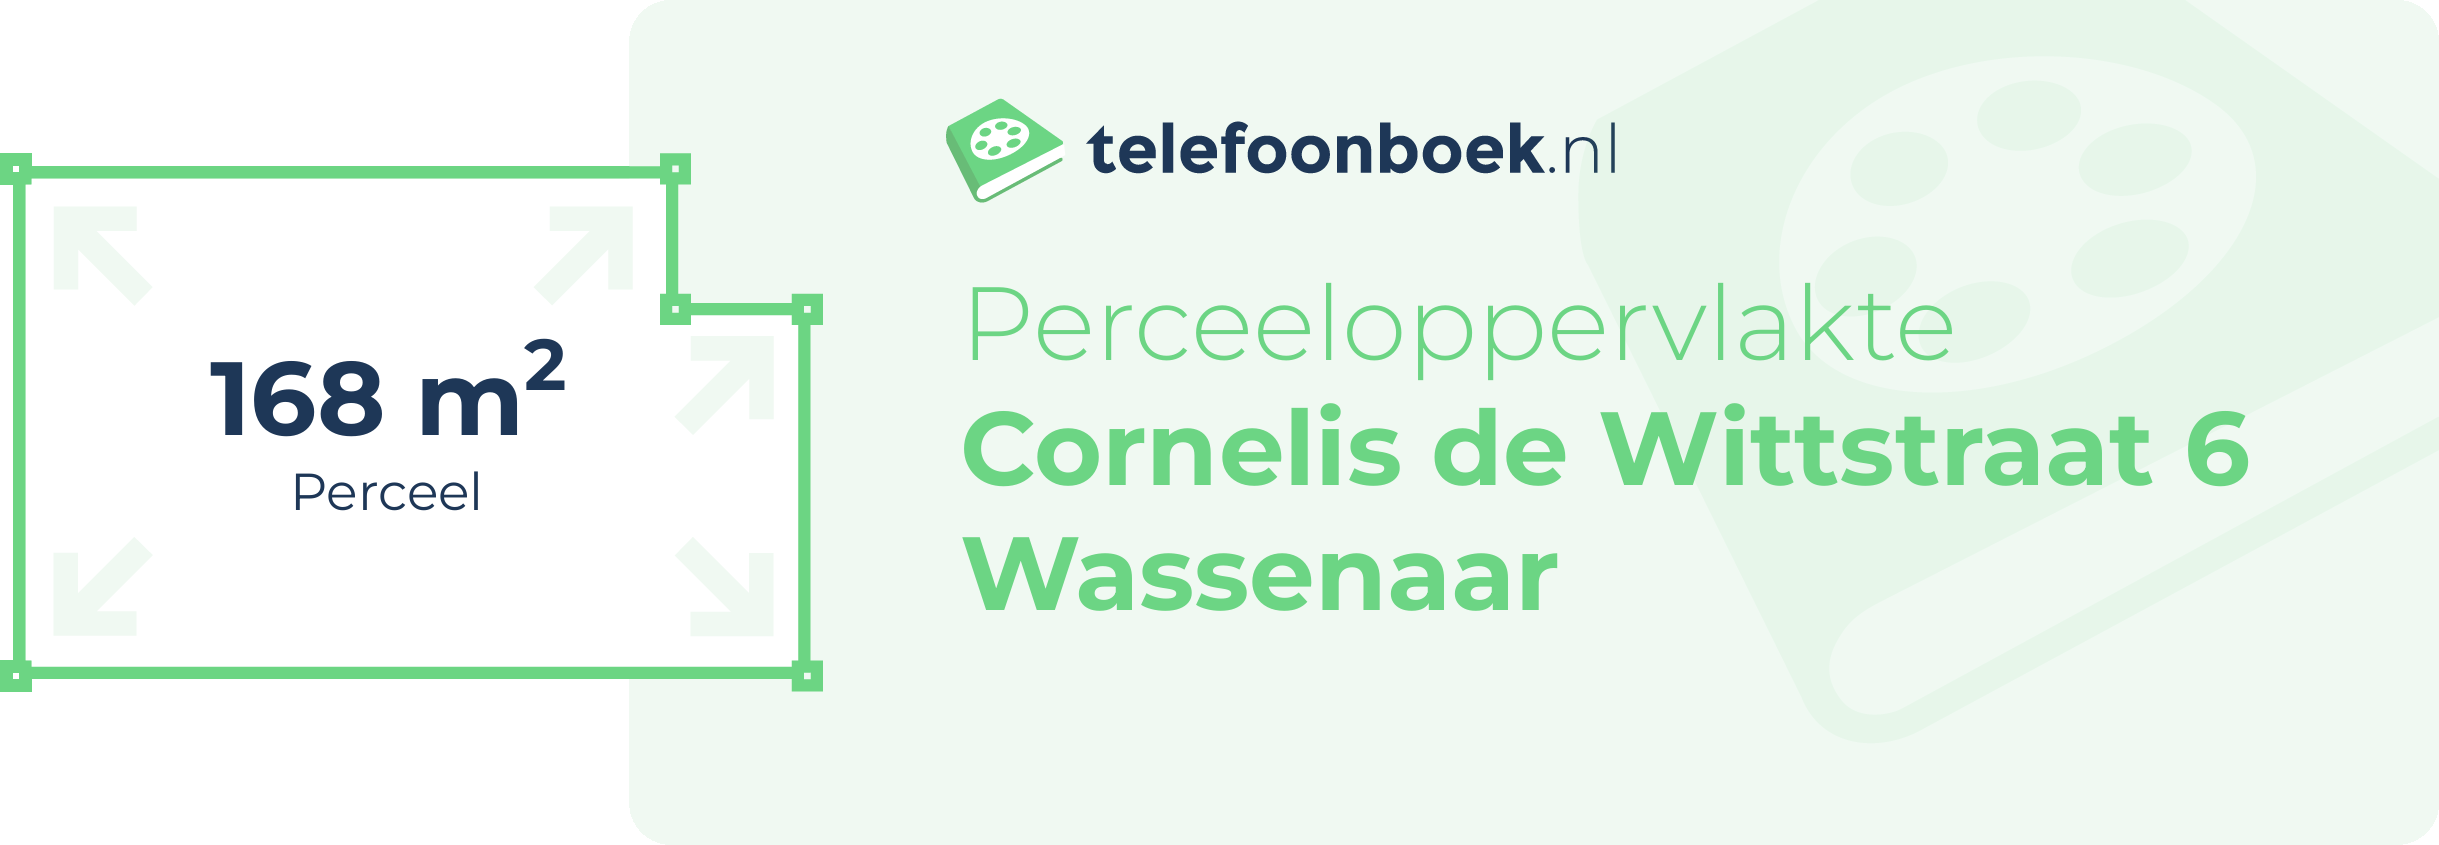 Perceeloppervlakte Cornelis De Wittstraat 6 Wassenaar